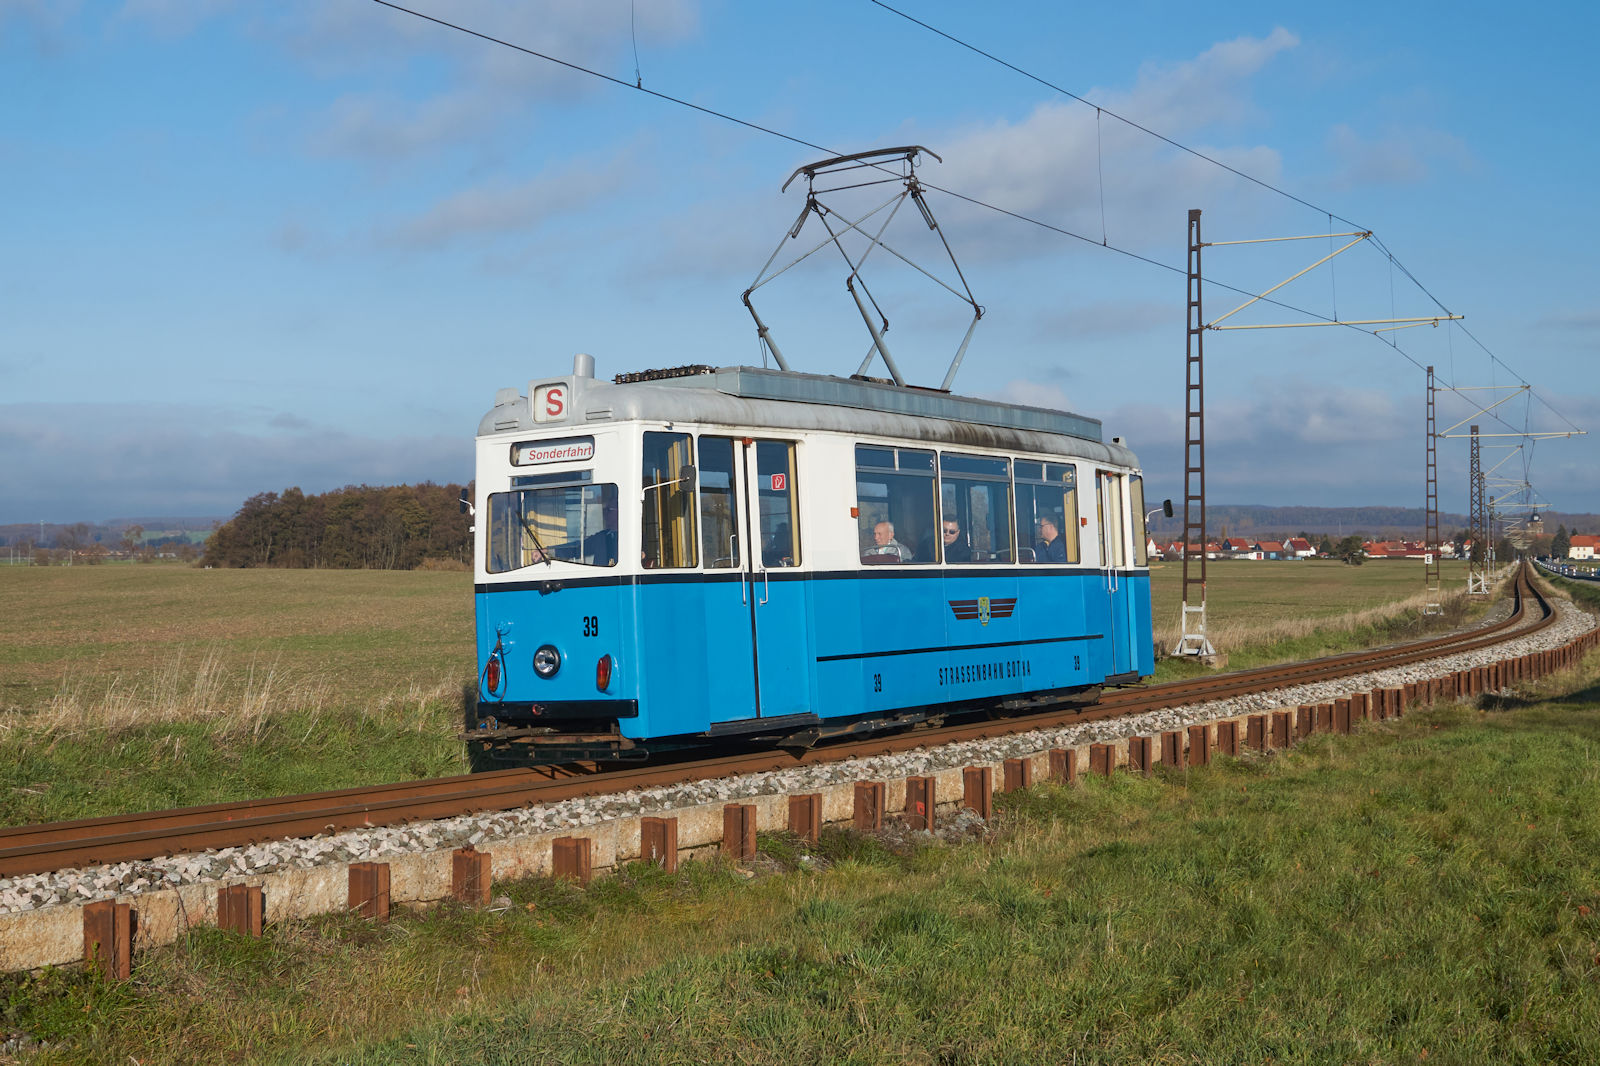 ET55 Nr. 39 der Thringer Wald- und Straenbahn Gotha war am 26.11.2022 fr eine Sonderfahrt gebucht und war auf dem Weg von Gotha in Richtung Friedrichroda. Hier befand sich der Wagen kurz vor dem Gleisdreieck.